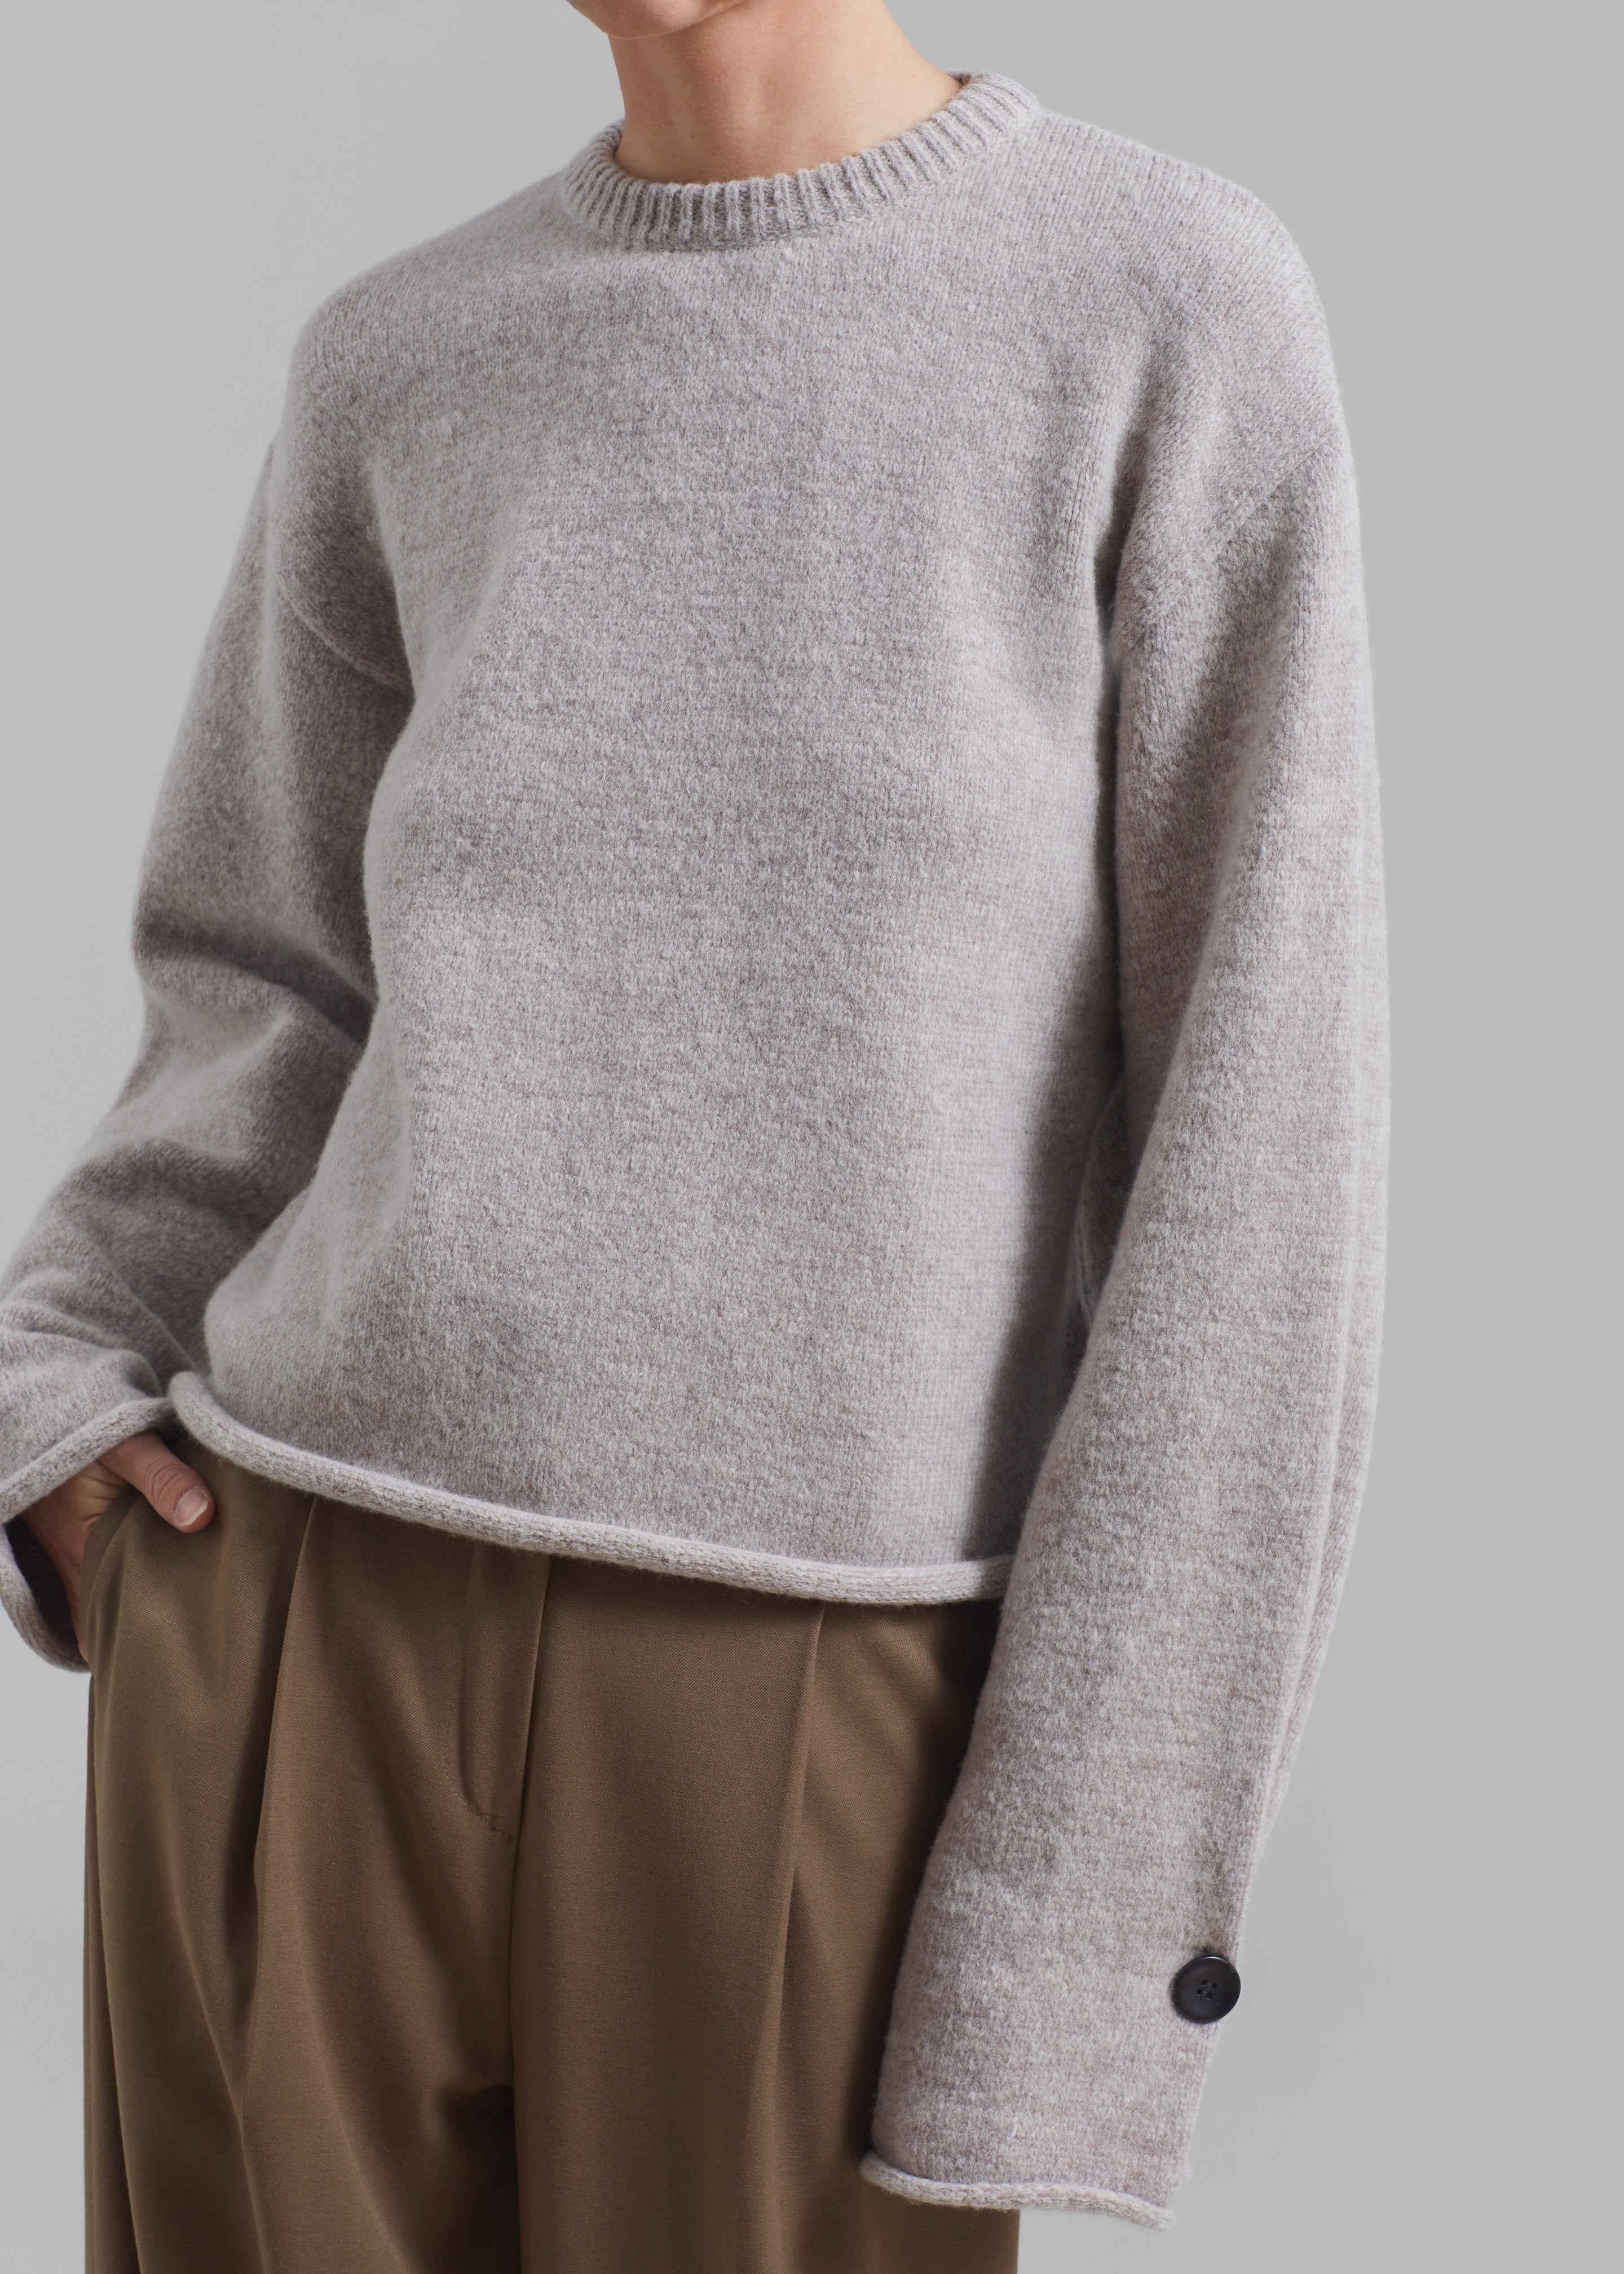 Proenza Schouler White Label Tara Sweater - Fig